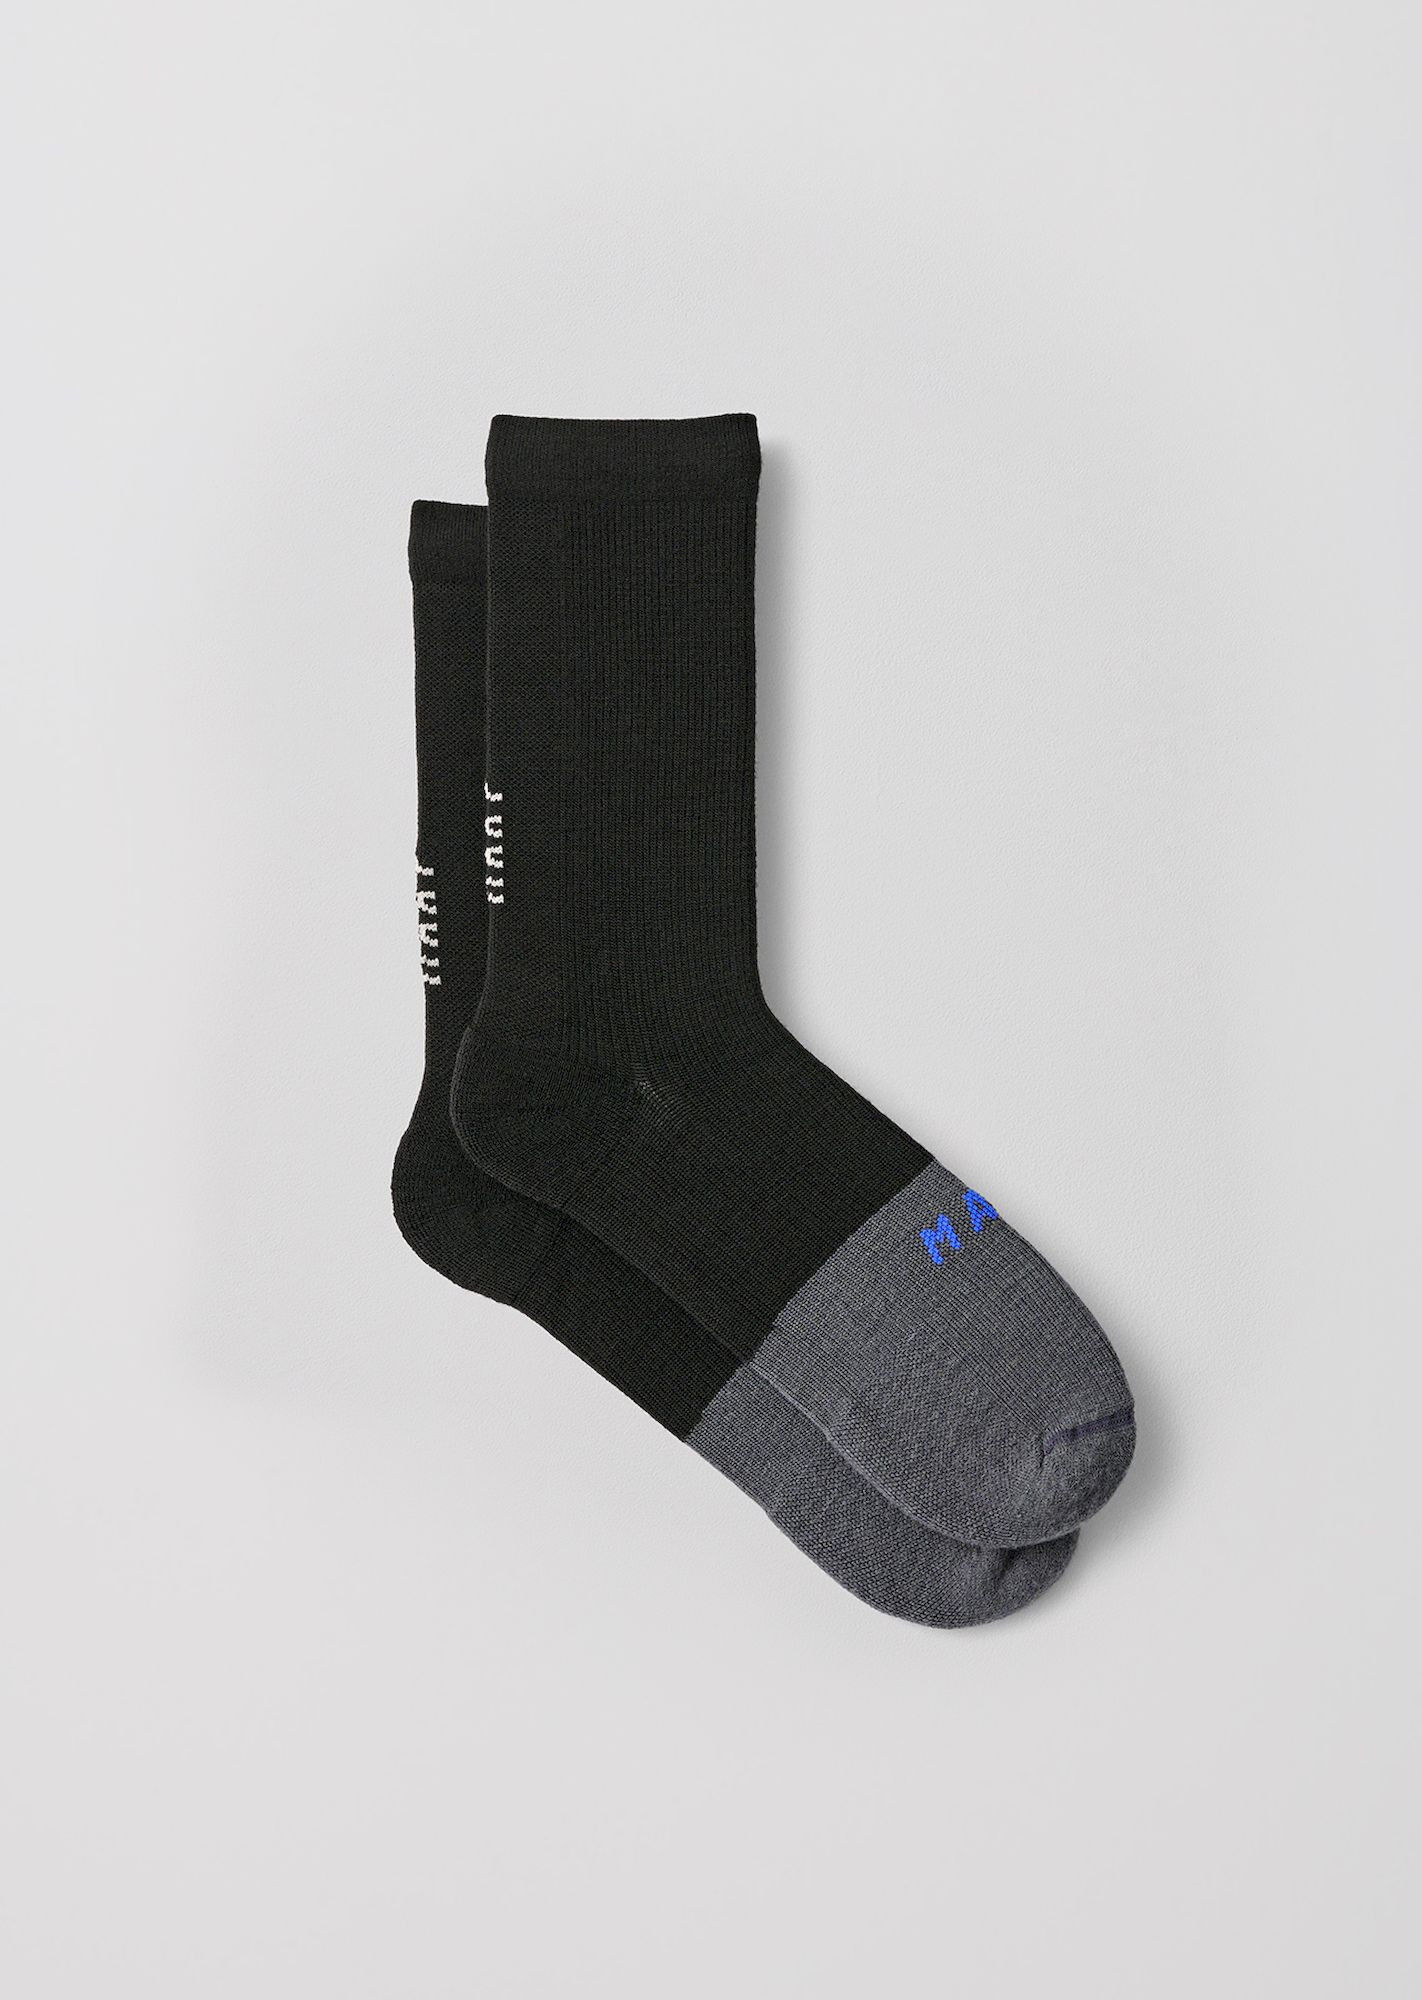 Maap Division Merino Sock - Calze merino | Hardloop